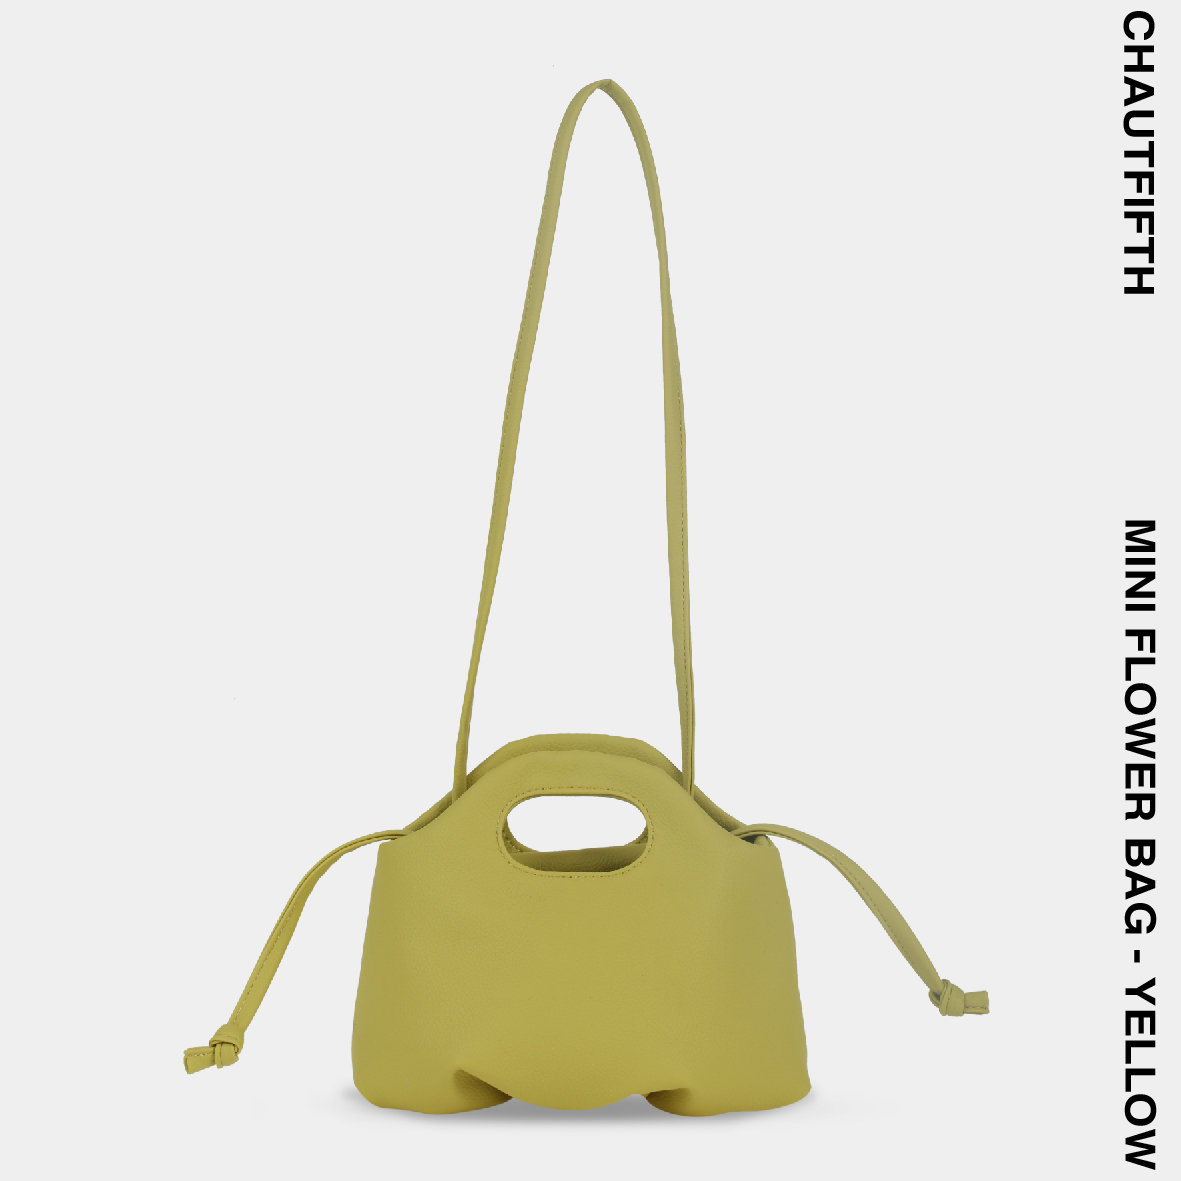 Túi xách MINI FLOWER màu vàng cốm - CHAUTFIFTH